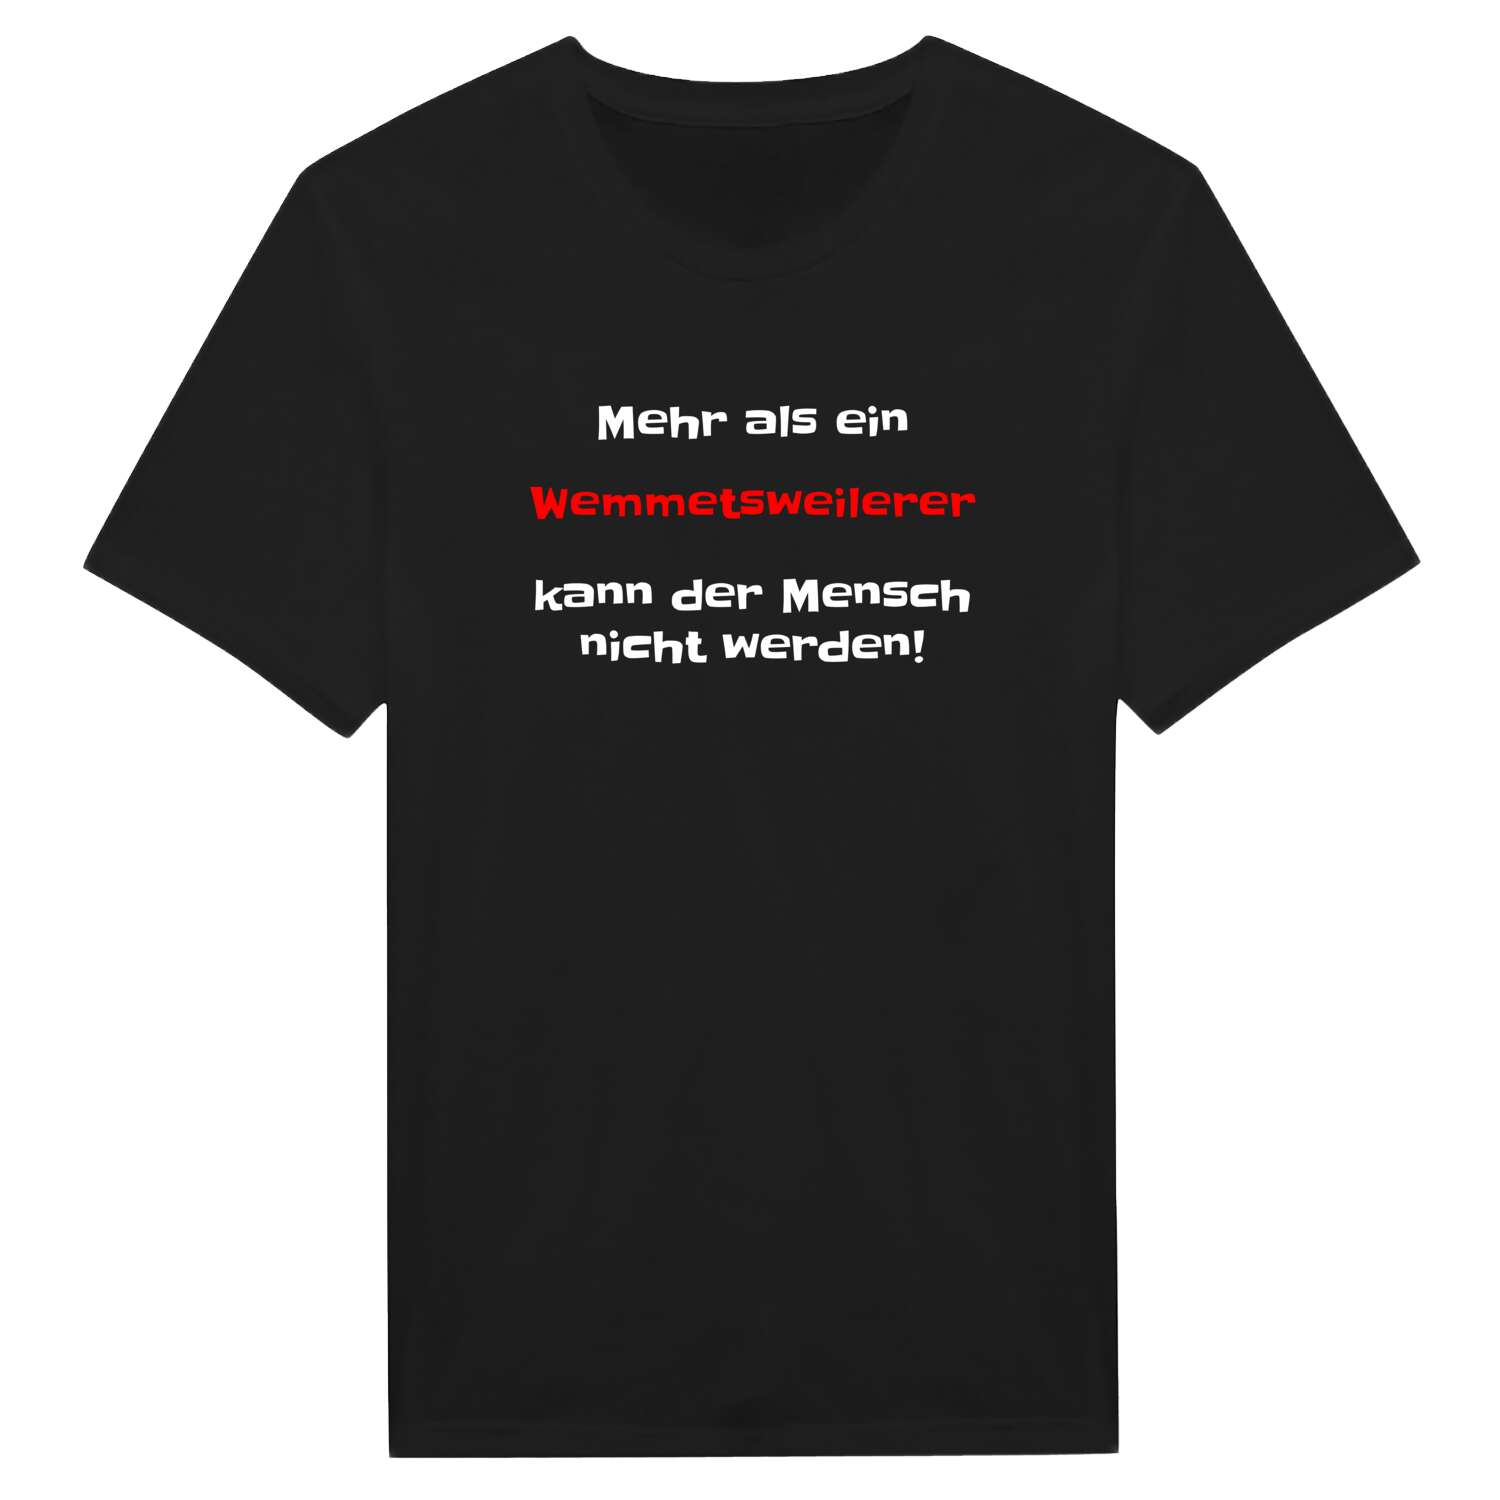 Wemmetsweiler T-Shirt »Mehr als ein«